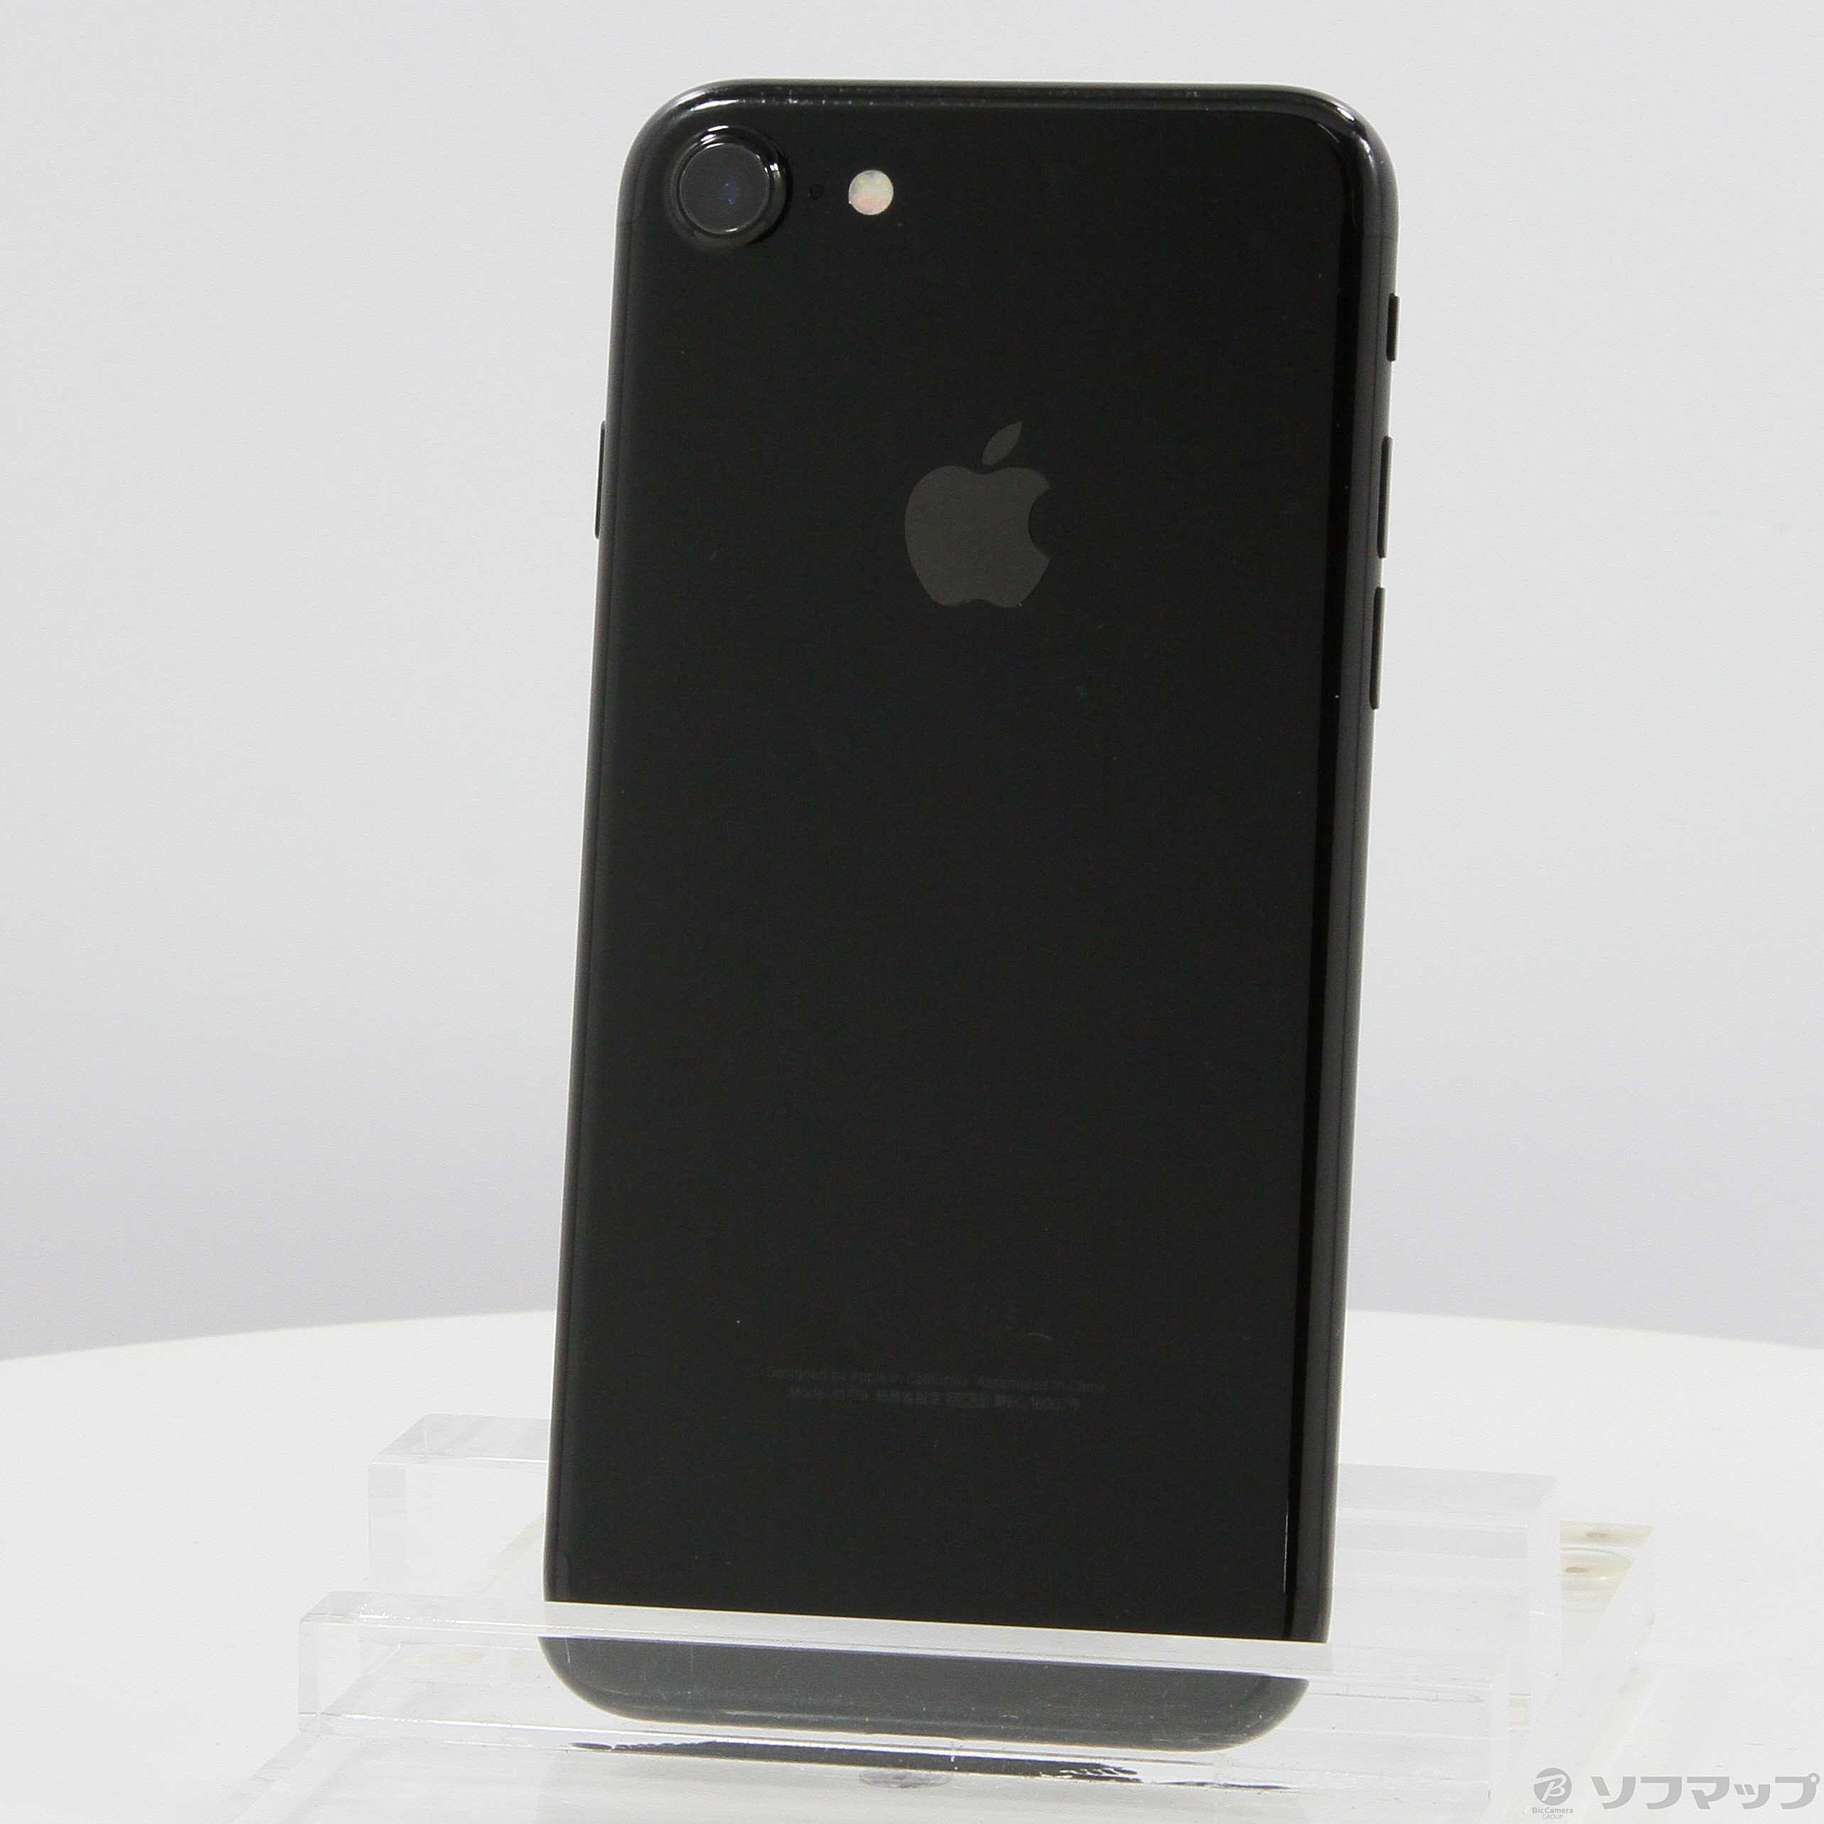 SIMフリー iPhone 7 128GB ブラック